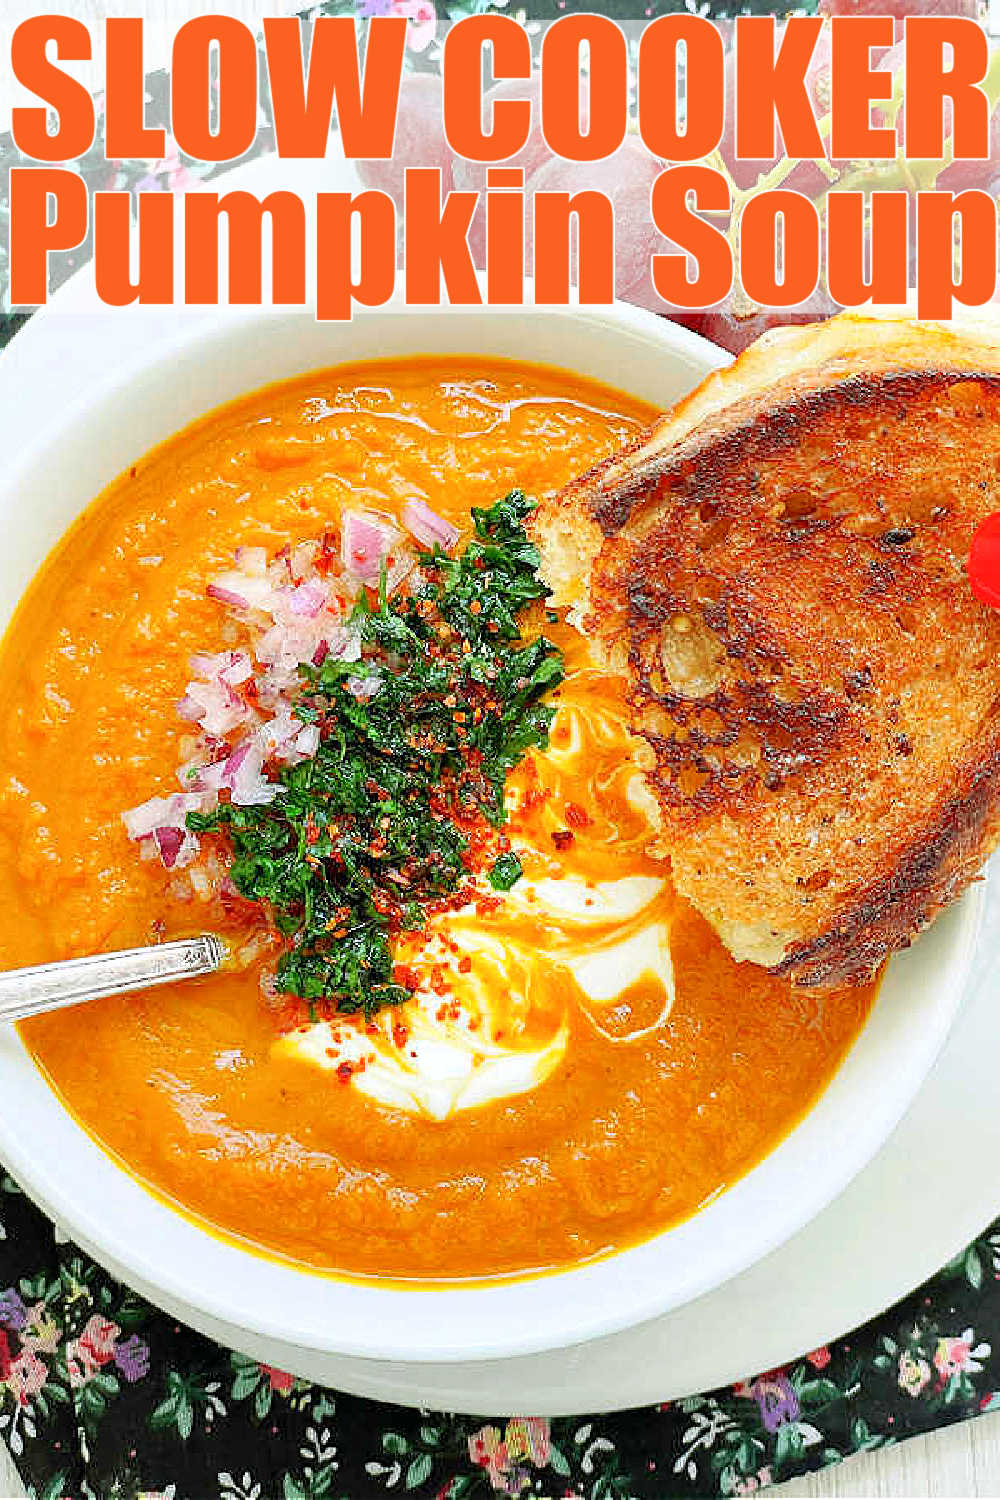 Slow Cooker Pumpkin Soup | Foodtastic Mom #slowcookerrecipes #crockpotrecipes #souprecipes #pumpkinrecipes #slowcookerpumpkinsoup via @foodtasticmom